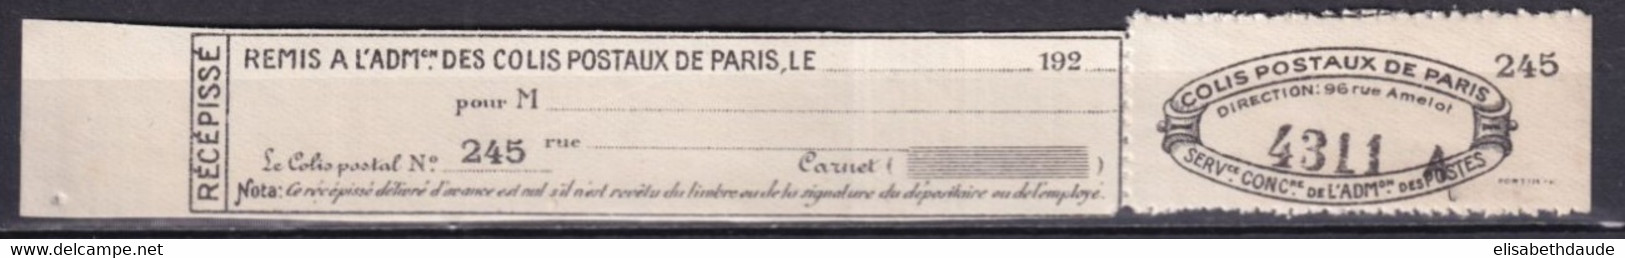 COLIS POSTAUX PARIS POUR PARIS  - 1926 - MAURY N°122 (*) NSG COMPLET ! - COTE 2009 = 40 EUR. - Mint/Hinged